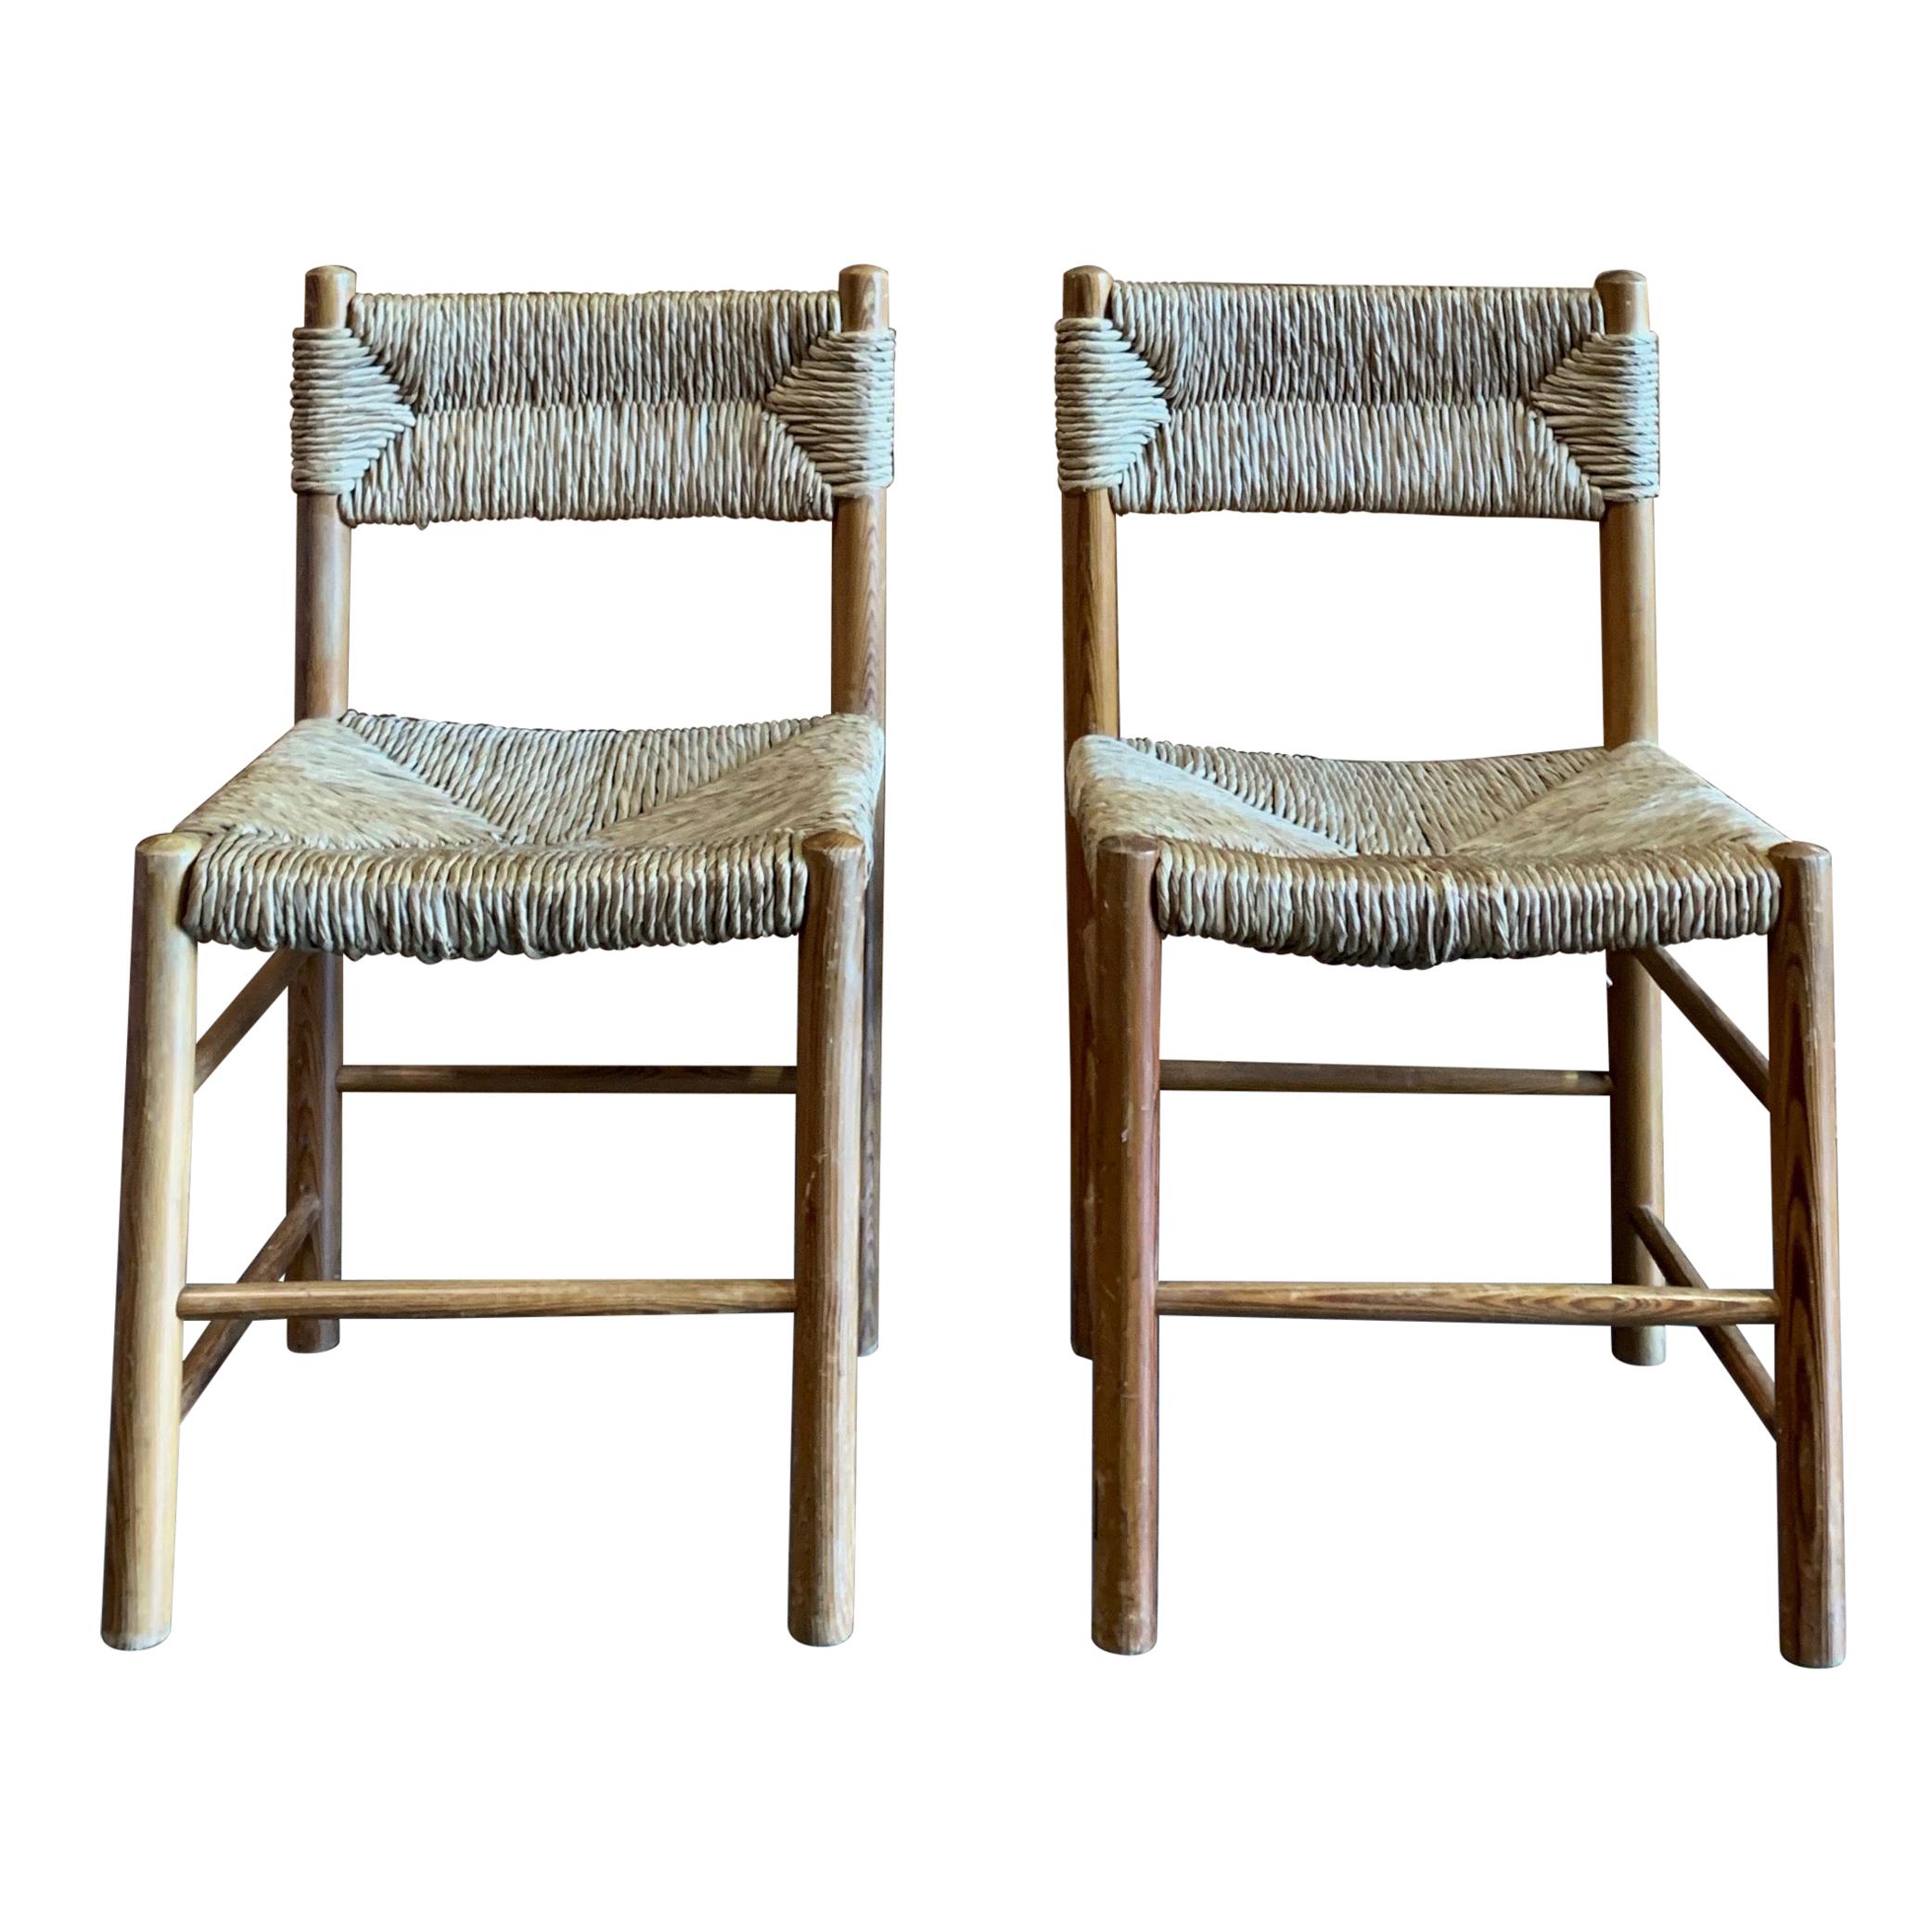 Chaise conçue dans le style de Charlotte Perriand vers 1950, a été fabriquée en France. La chaise est faite d'une base et de pieds en bois avec une assise en jonc.